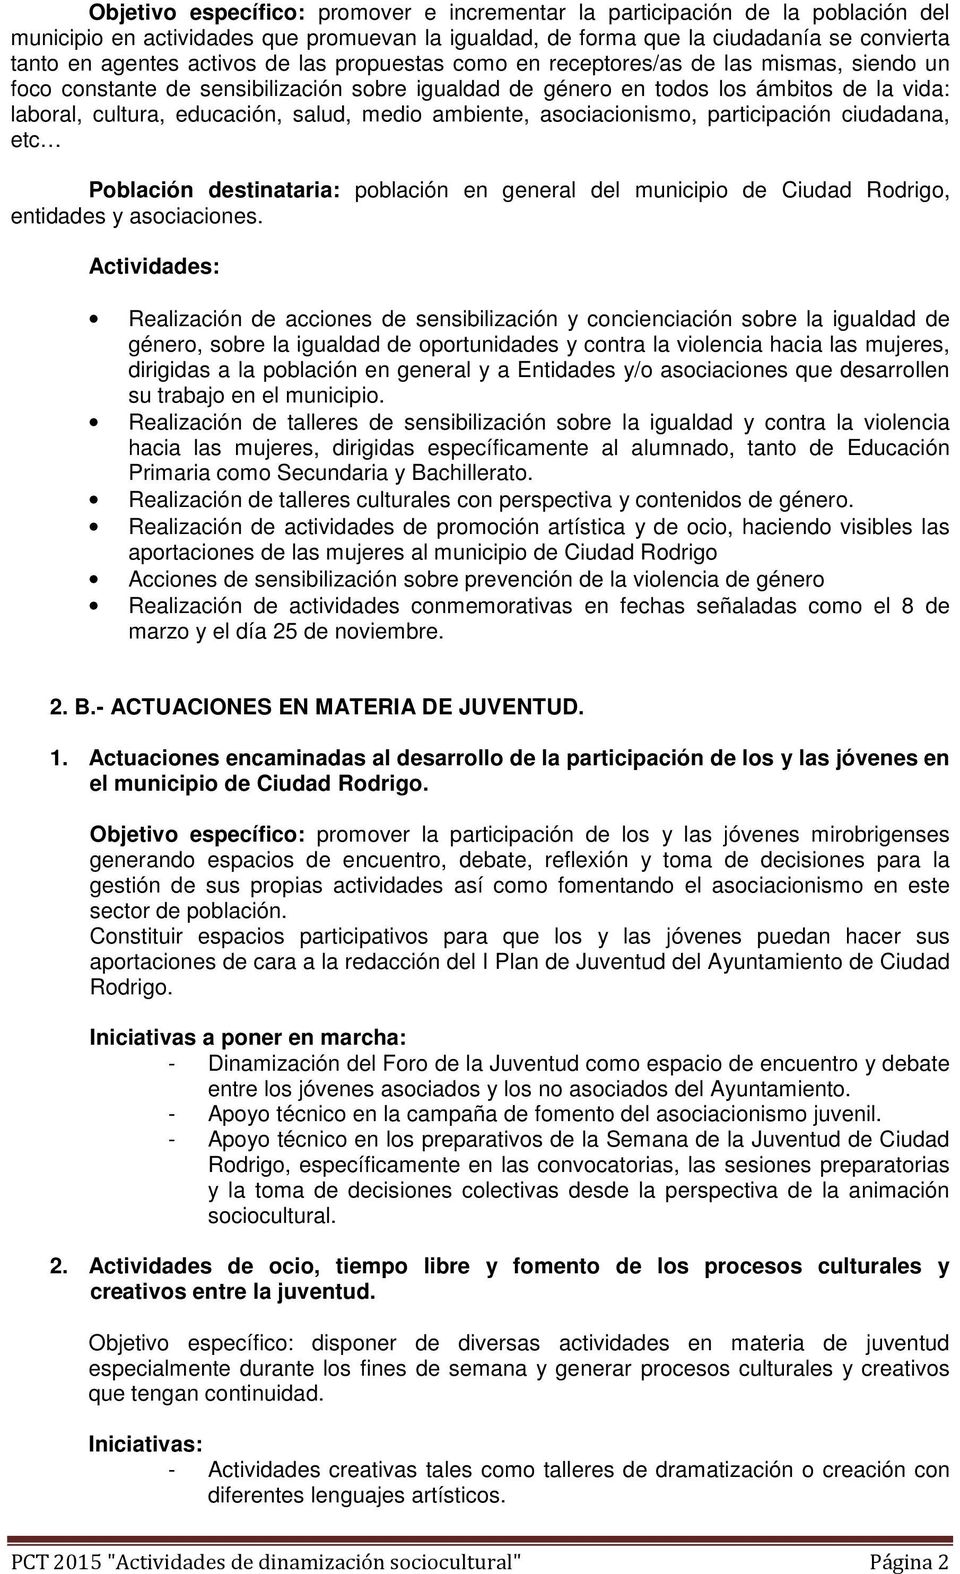 ambiente, asociacionismo, participación ciudadana, etc Población destinataria: población en general del municipio de Ciudad Rodrigo, entidades y asociaciones.